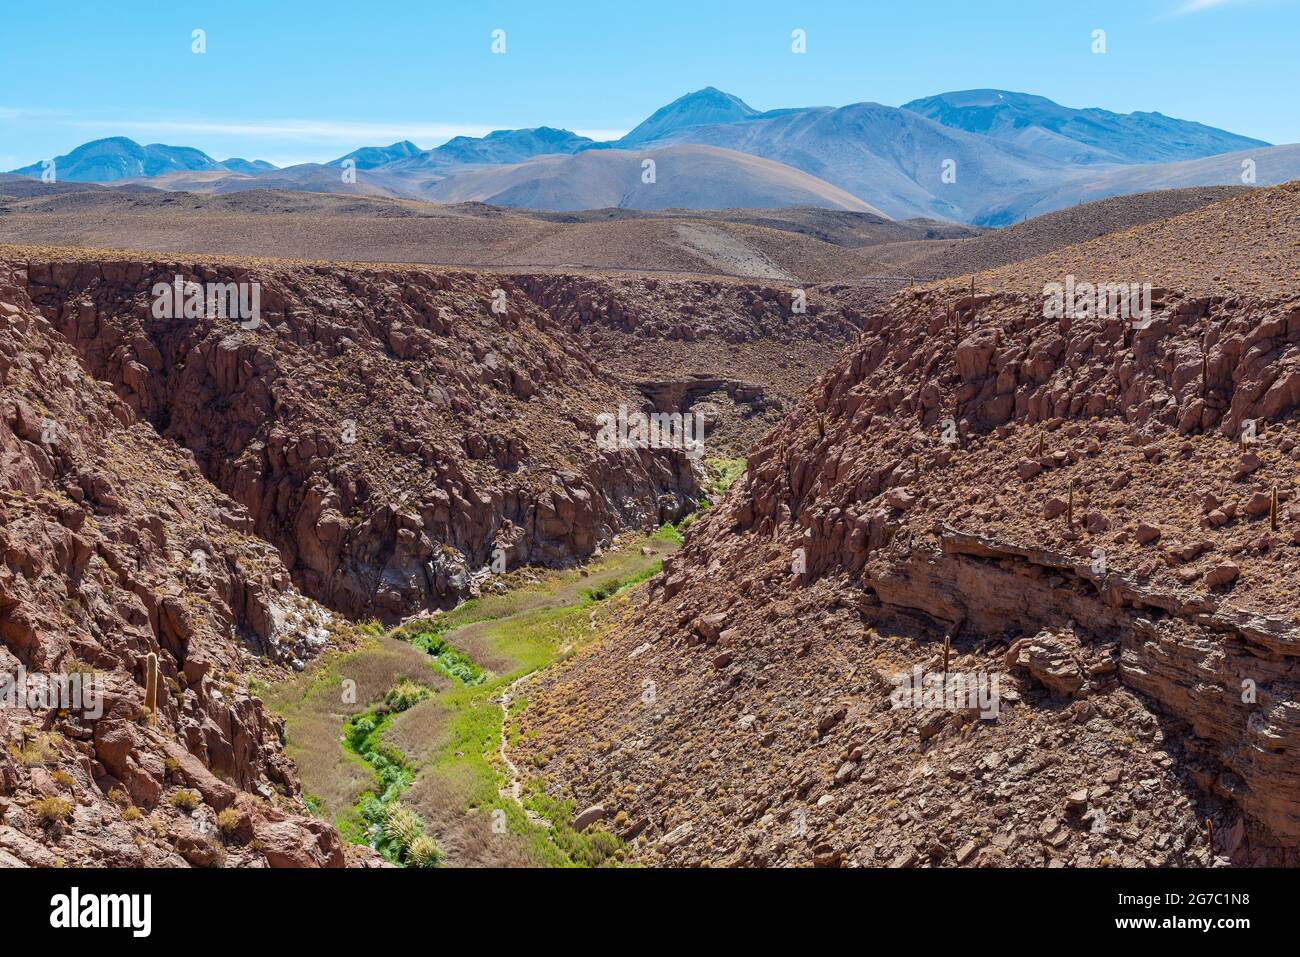 Ruisseau rare avec vallée verte fertile dans le désert aride Atacama, Chili. Banque D'Images